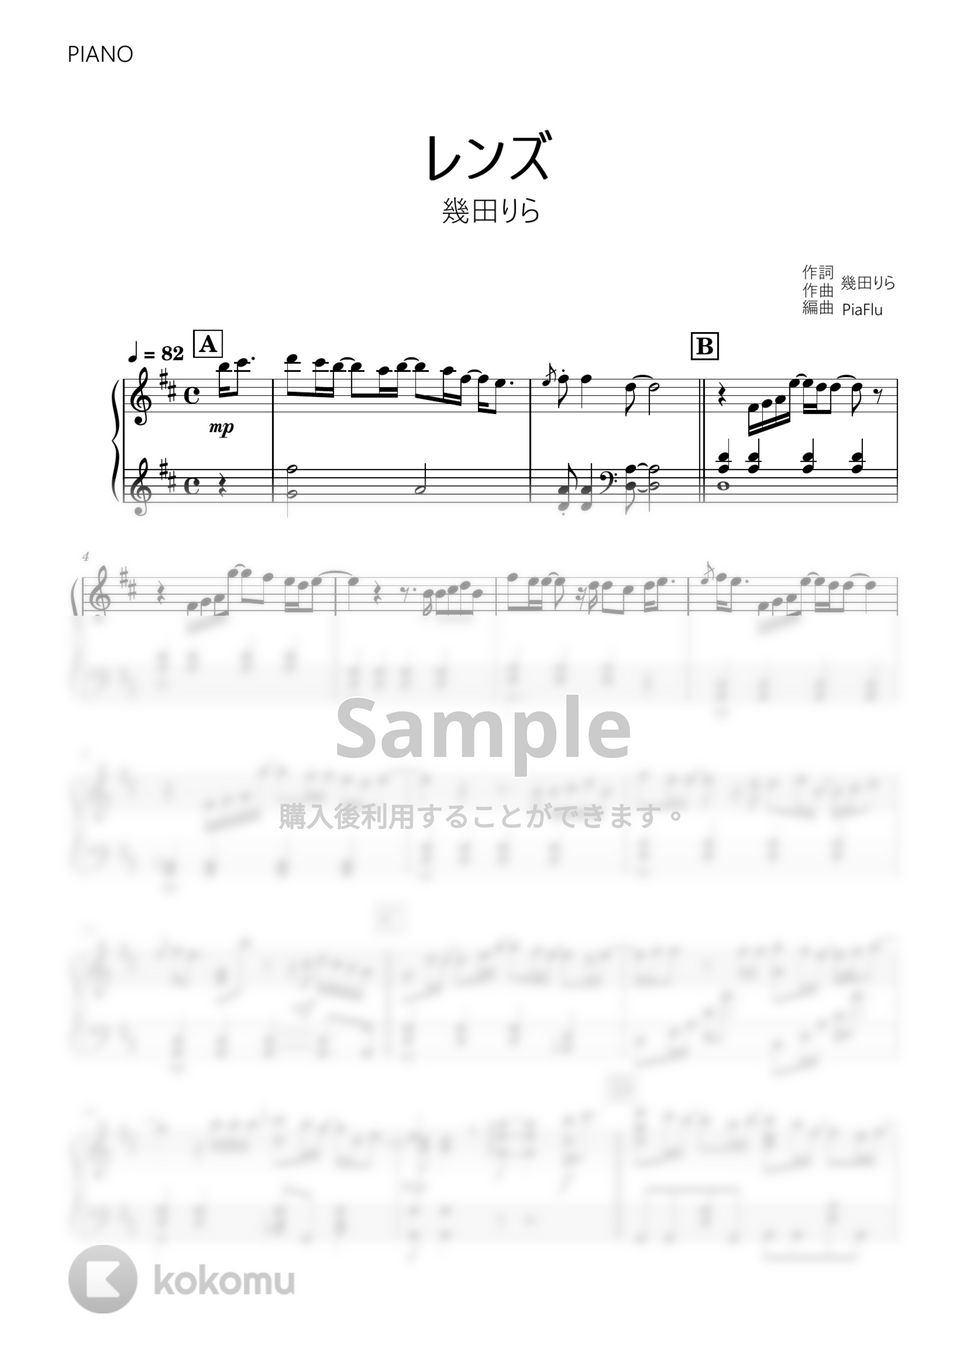 幾田りら - レンズ (ピアノ) by PiaFlu